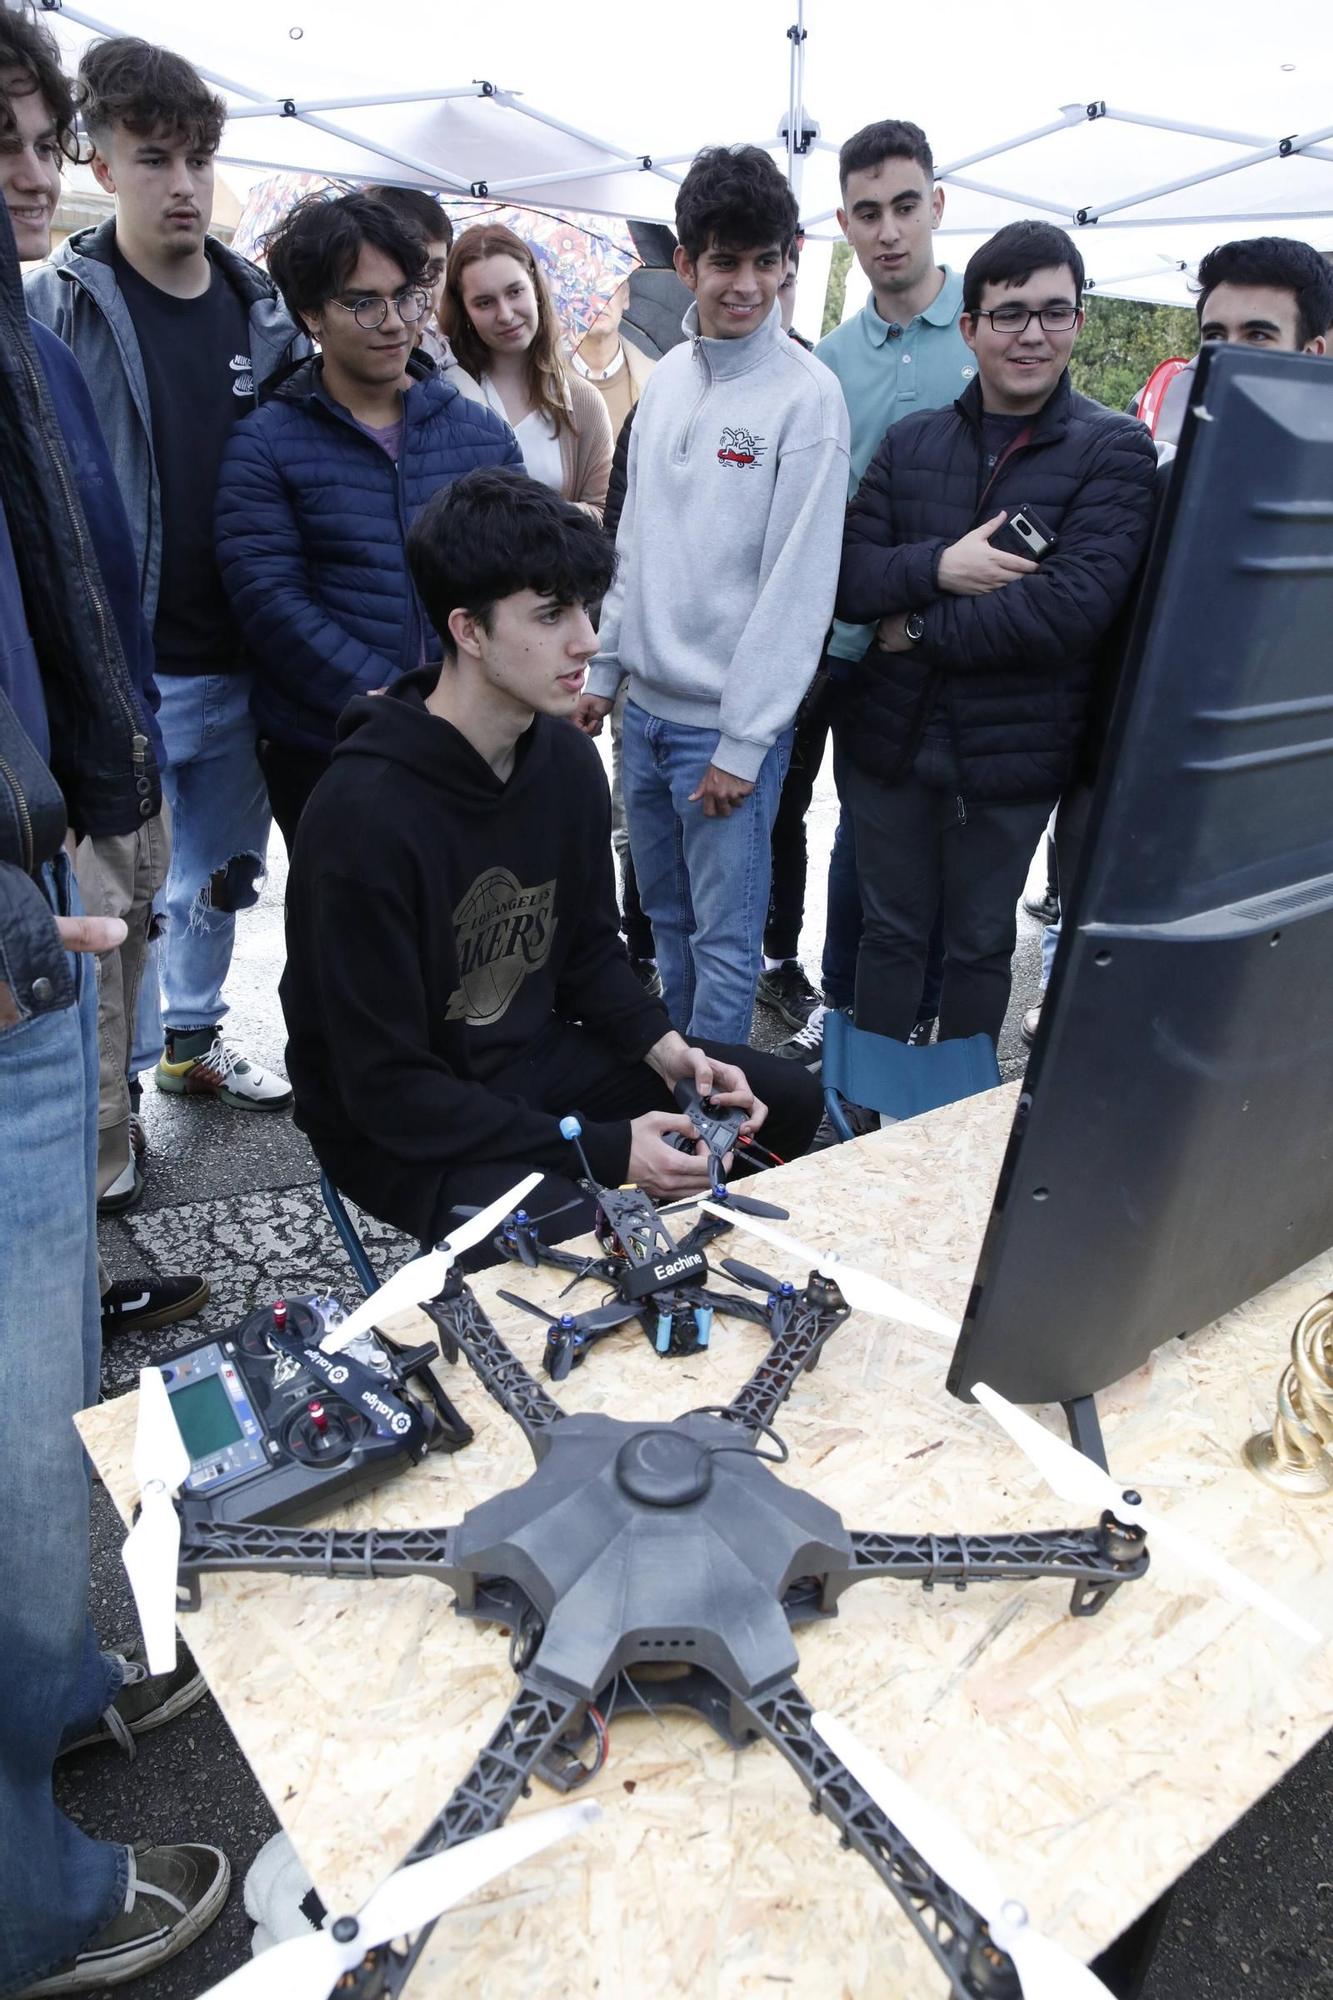 Así fue la jornada de drones en la Politécnica de Gijón (en imágenes)